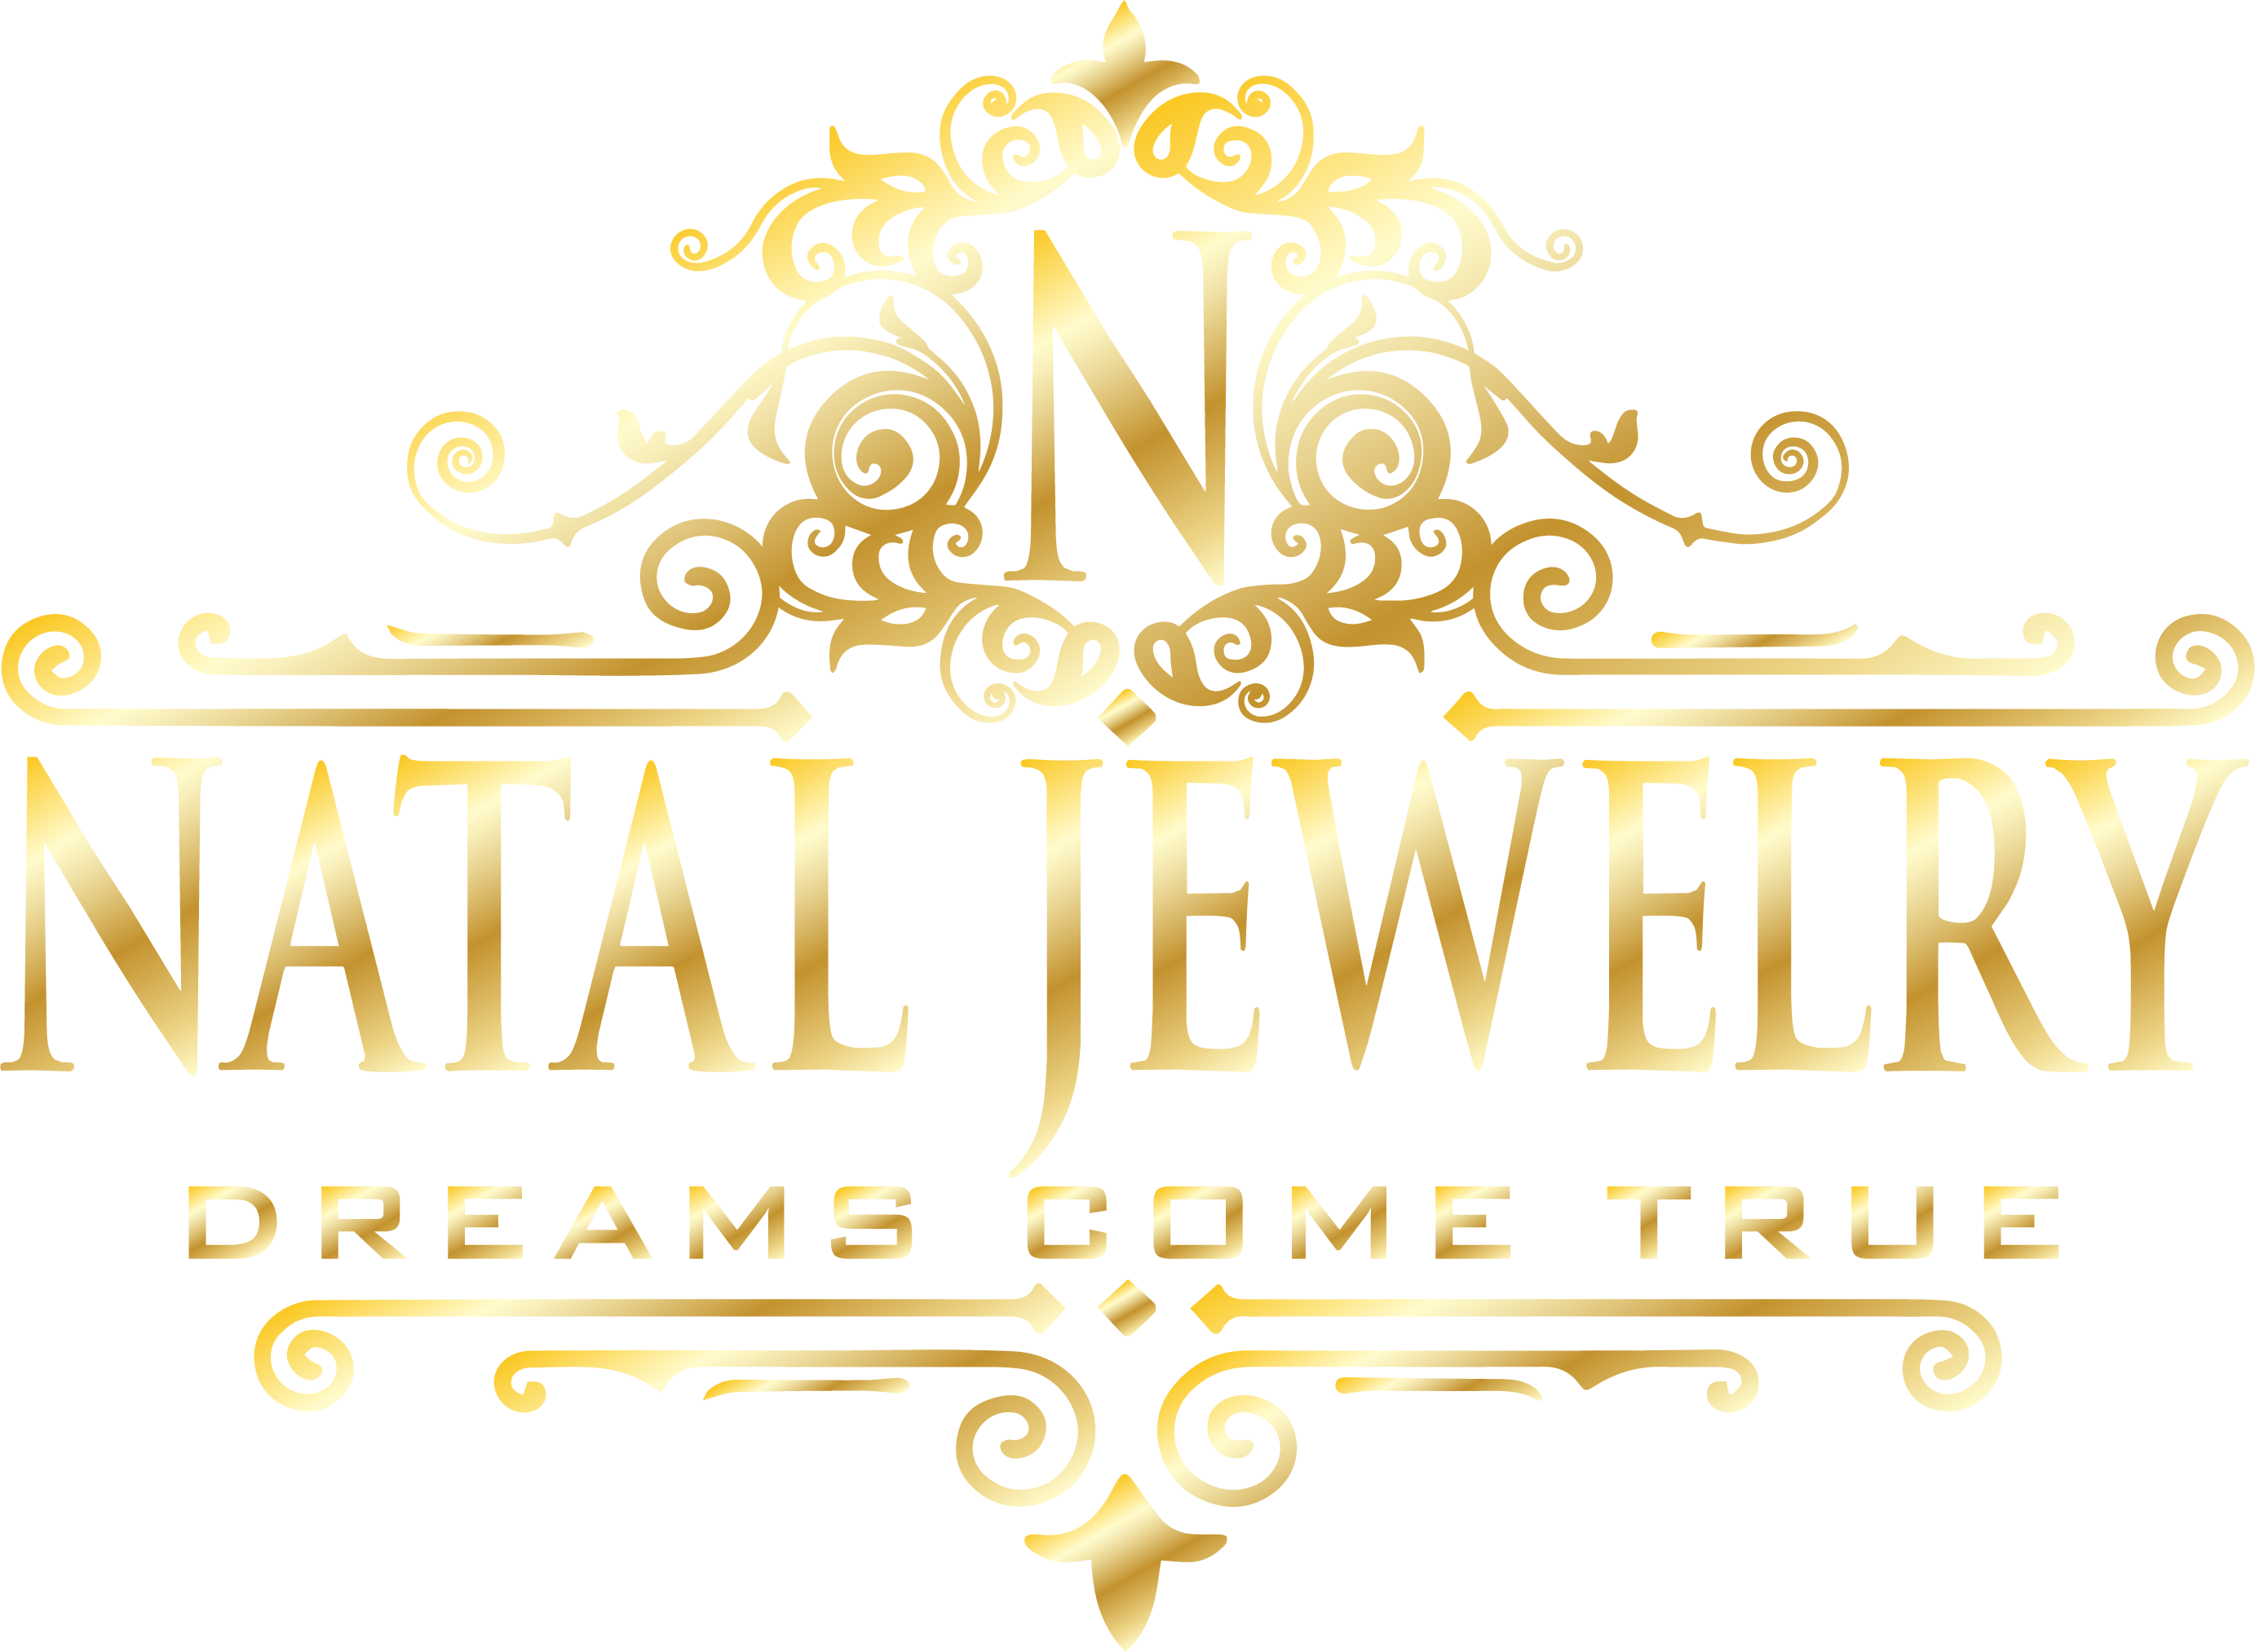 Robert Natal Jewelry